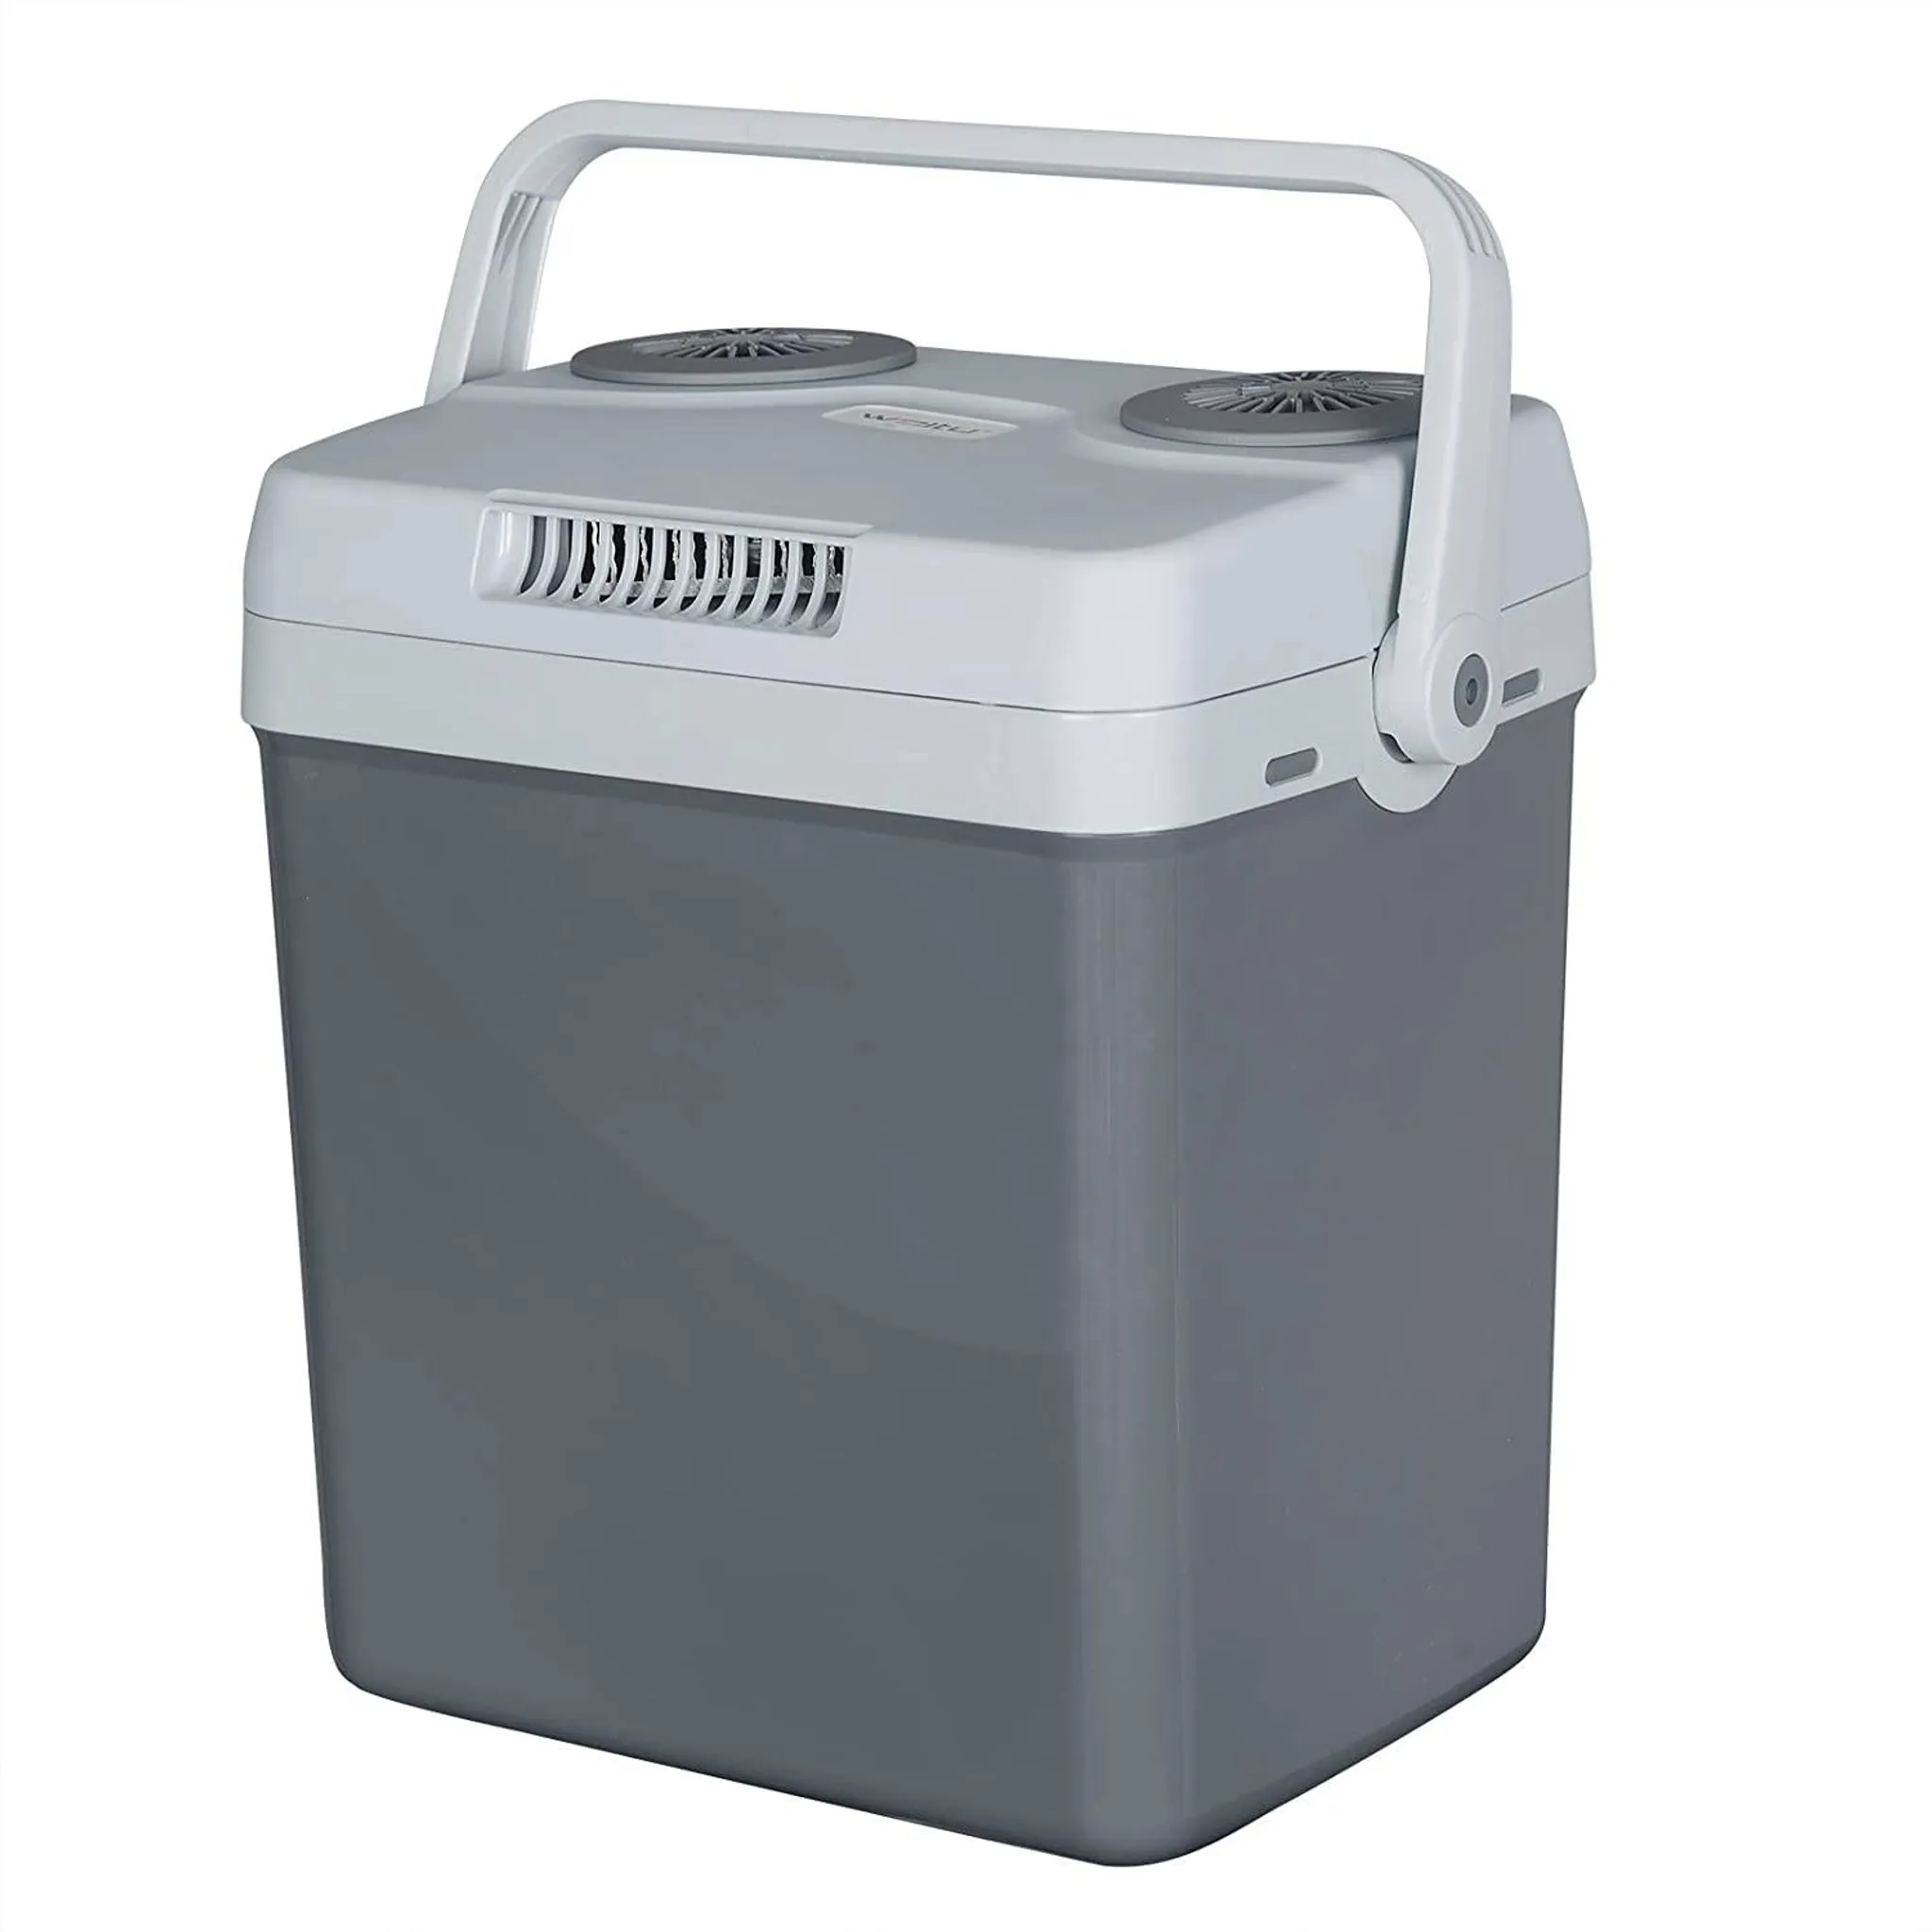 Arebos 20 Liter Kühlbox, Kühlbox klein, zum Kühlen und Warmhalten, mit  ECO Modus, 12/230 V für Auto und Steckdose, elektrische Kühlbox, Kühltasche